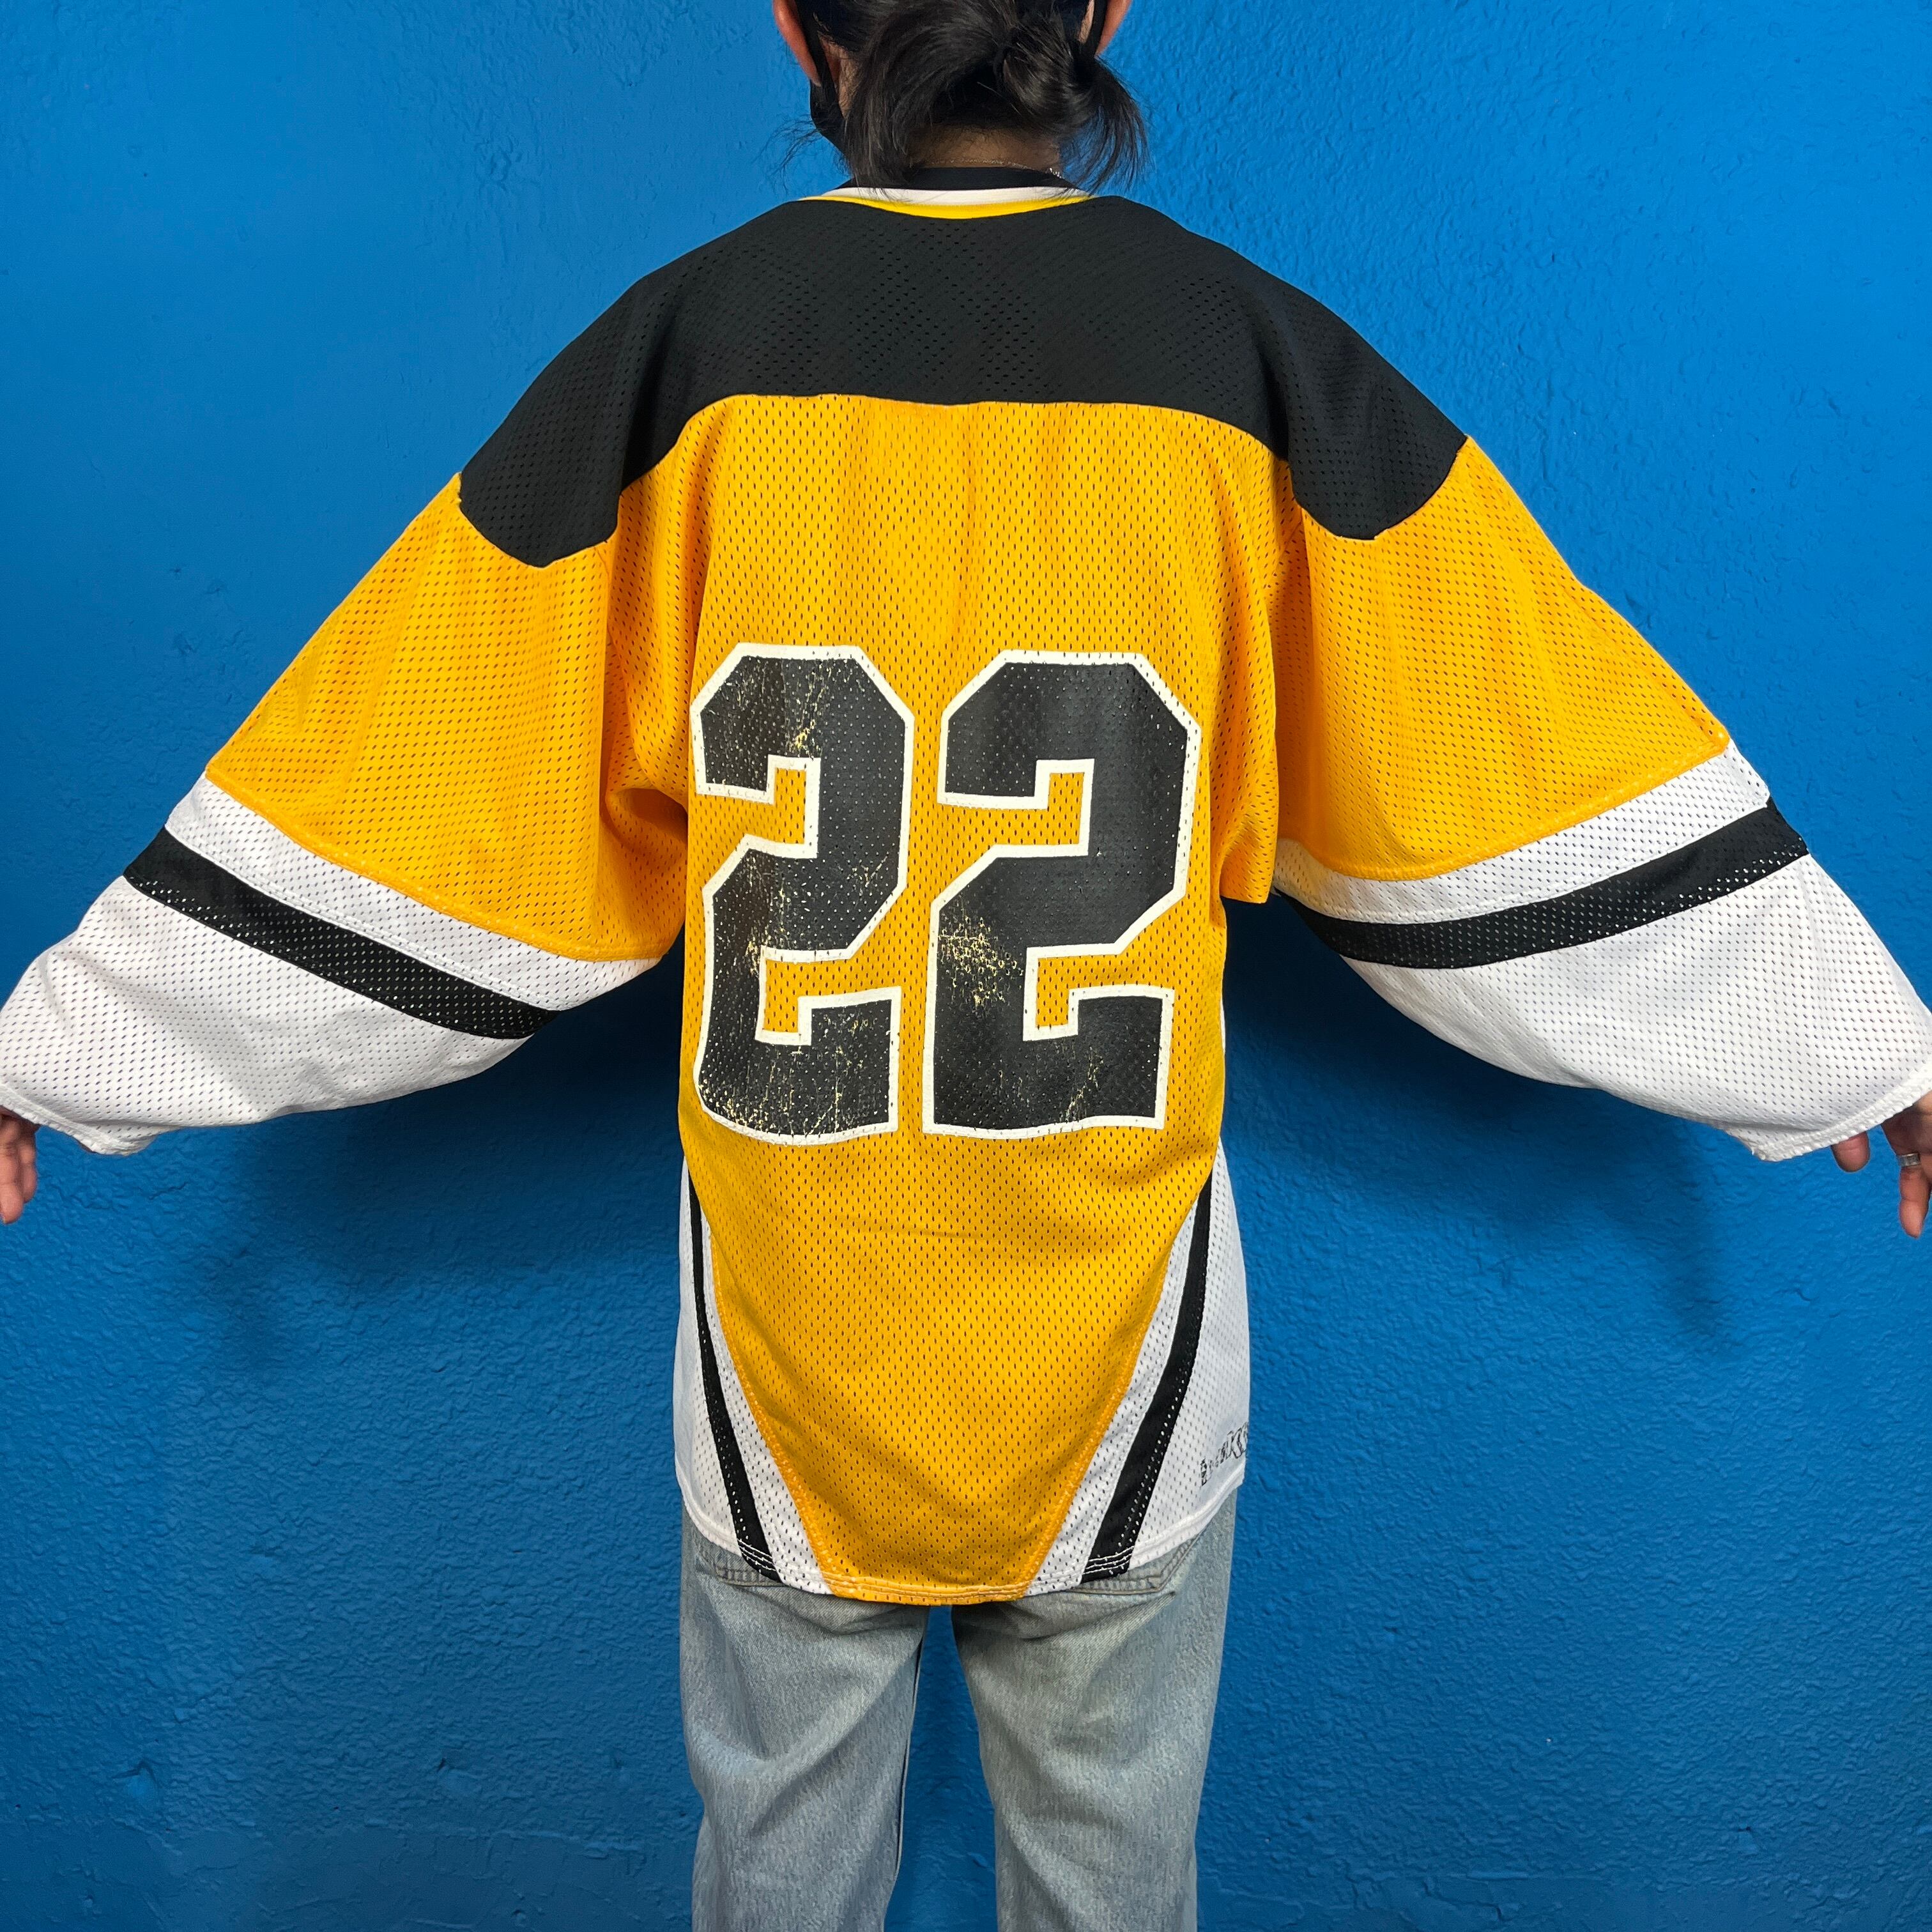 ビンテージゲームシャツ 90s ホッケーシャツ NHL 黄色 ブラウン えんじジャケット/アウター